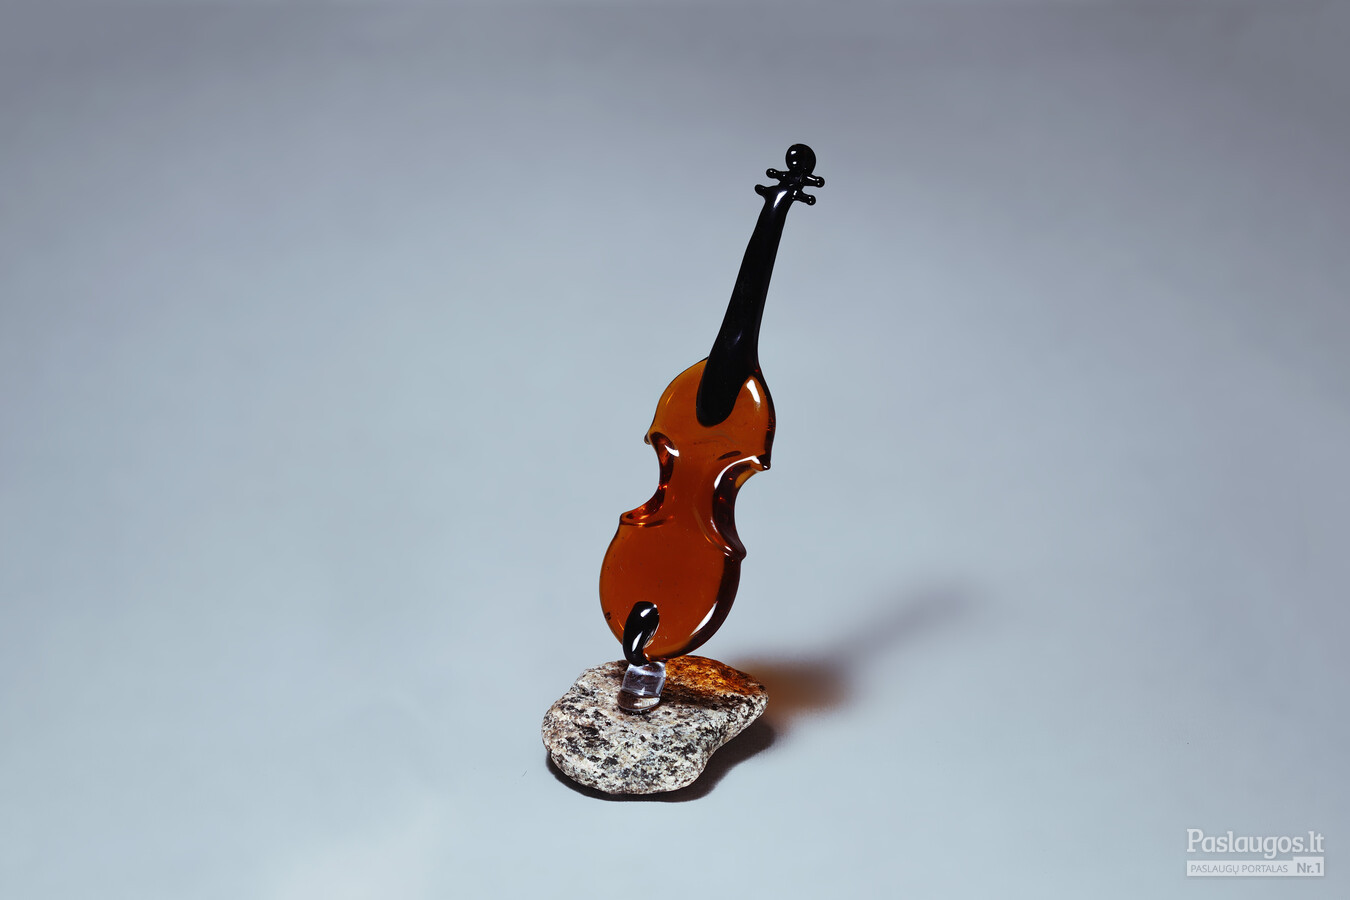 Stiklinio smuiko miniatiūra ant akmens pagrindo.
Dydis 15cm